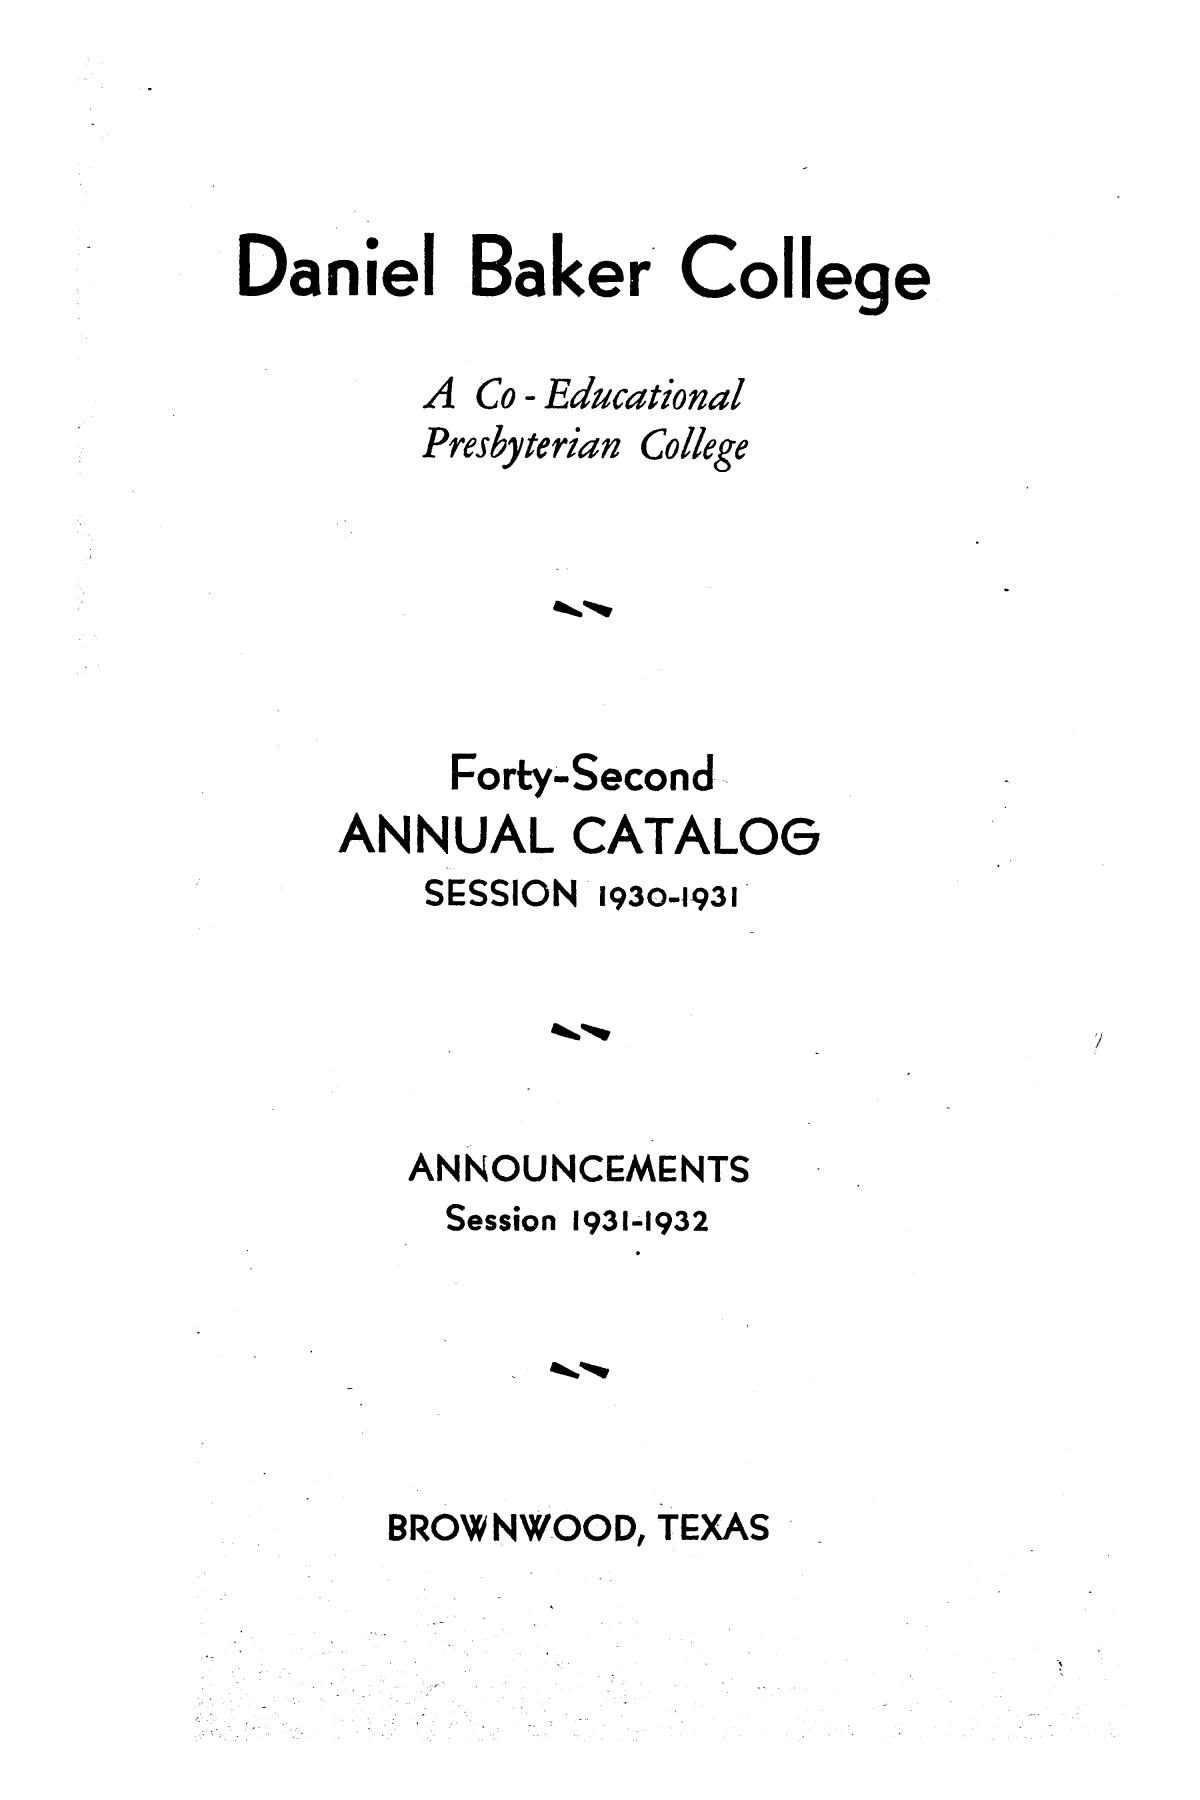 Catalog of Daniel Baker College, 1930-1931
                                                
                                                    1
                                                